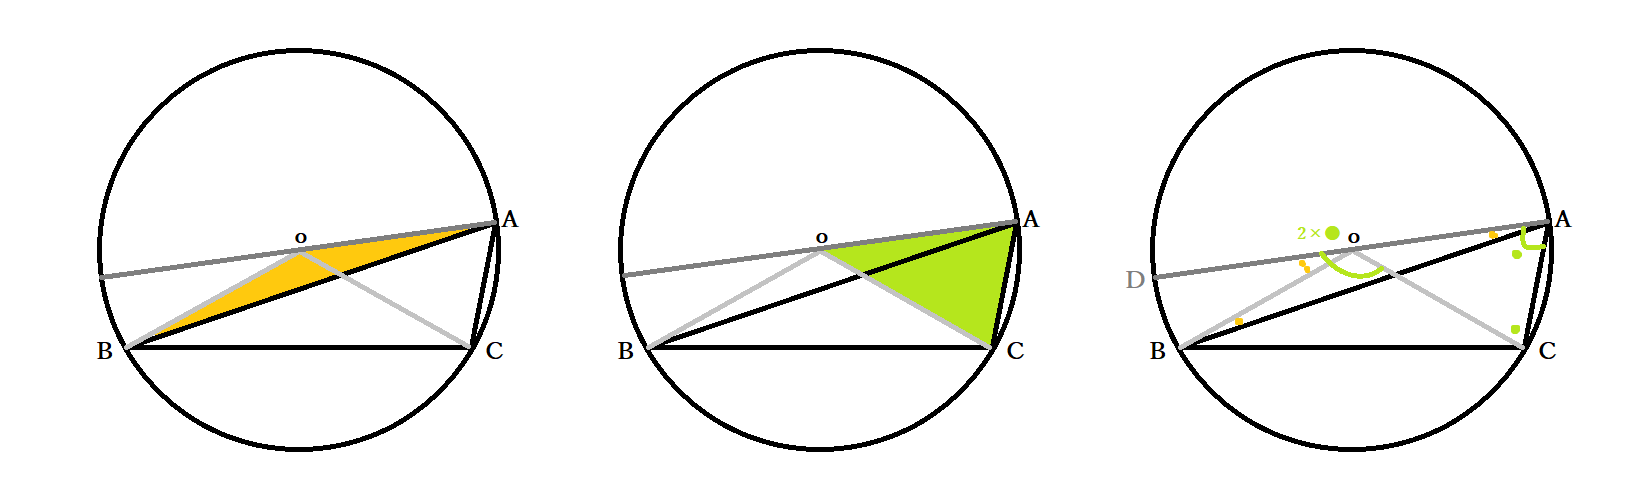 中3数学 円周角の定理とは 円周角と中心角の関係の証明法 円の性質の応用問題 中学 Curlpingの幸せblog